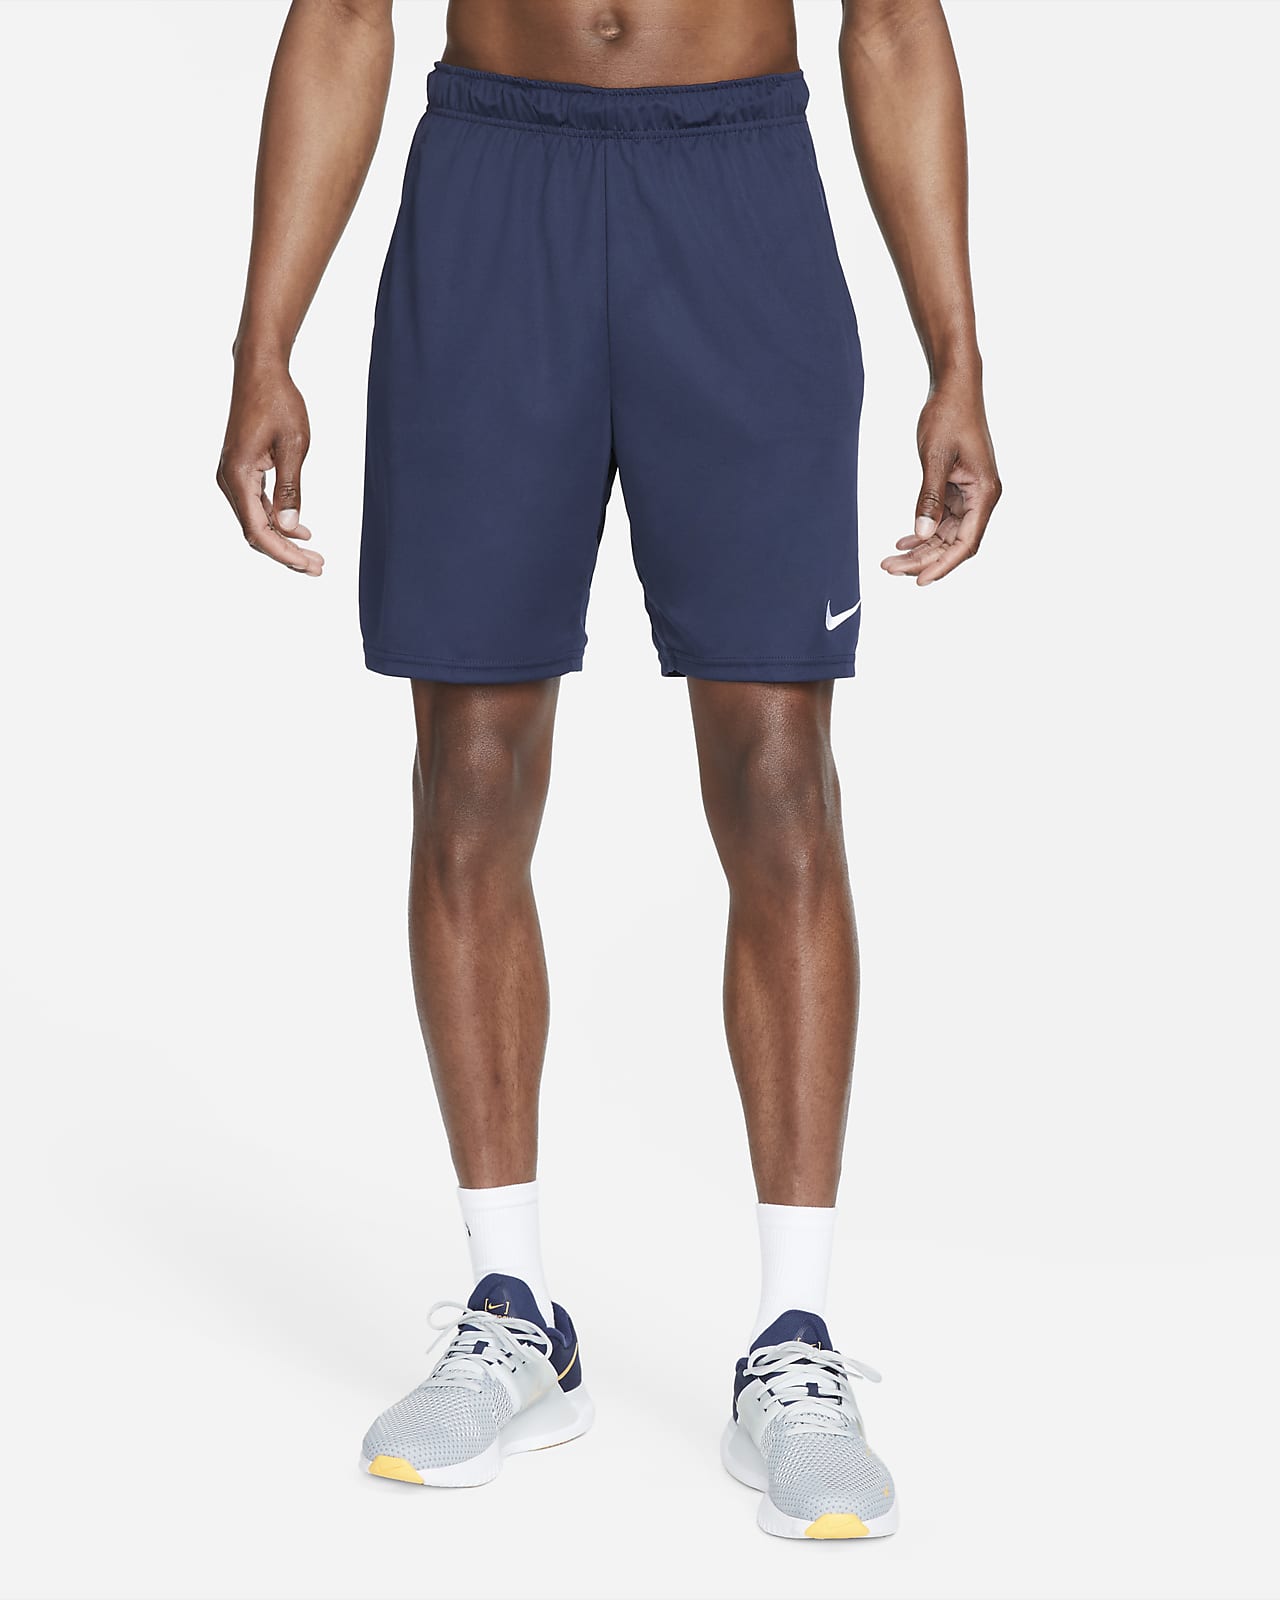 Kenia Química evidencia Nike Dri-FIT Pantalón corto de entrenamiento de 20 cm de tejido Knit -  Hombre. Nike ES